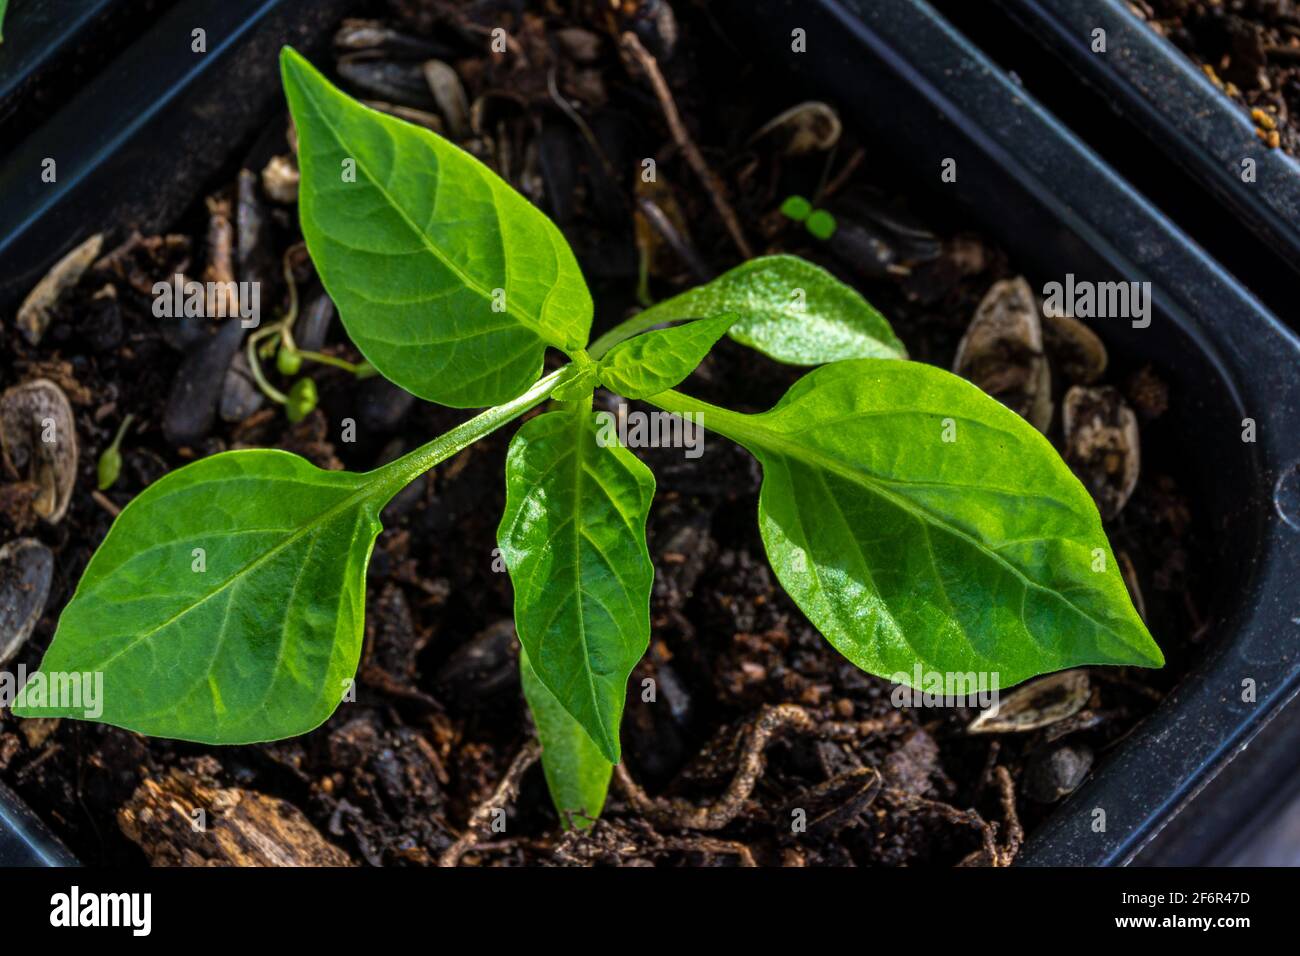 Les semis de Capsicum poussent dans un pot avec du sol. L'usine s'attend à des conditions favorables pour la transplantation en sol ouvert Banque D'Images